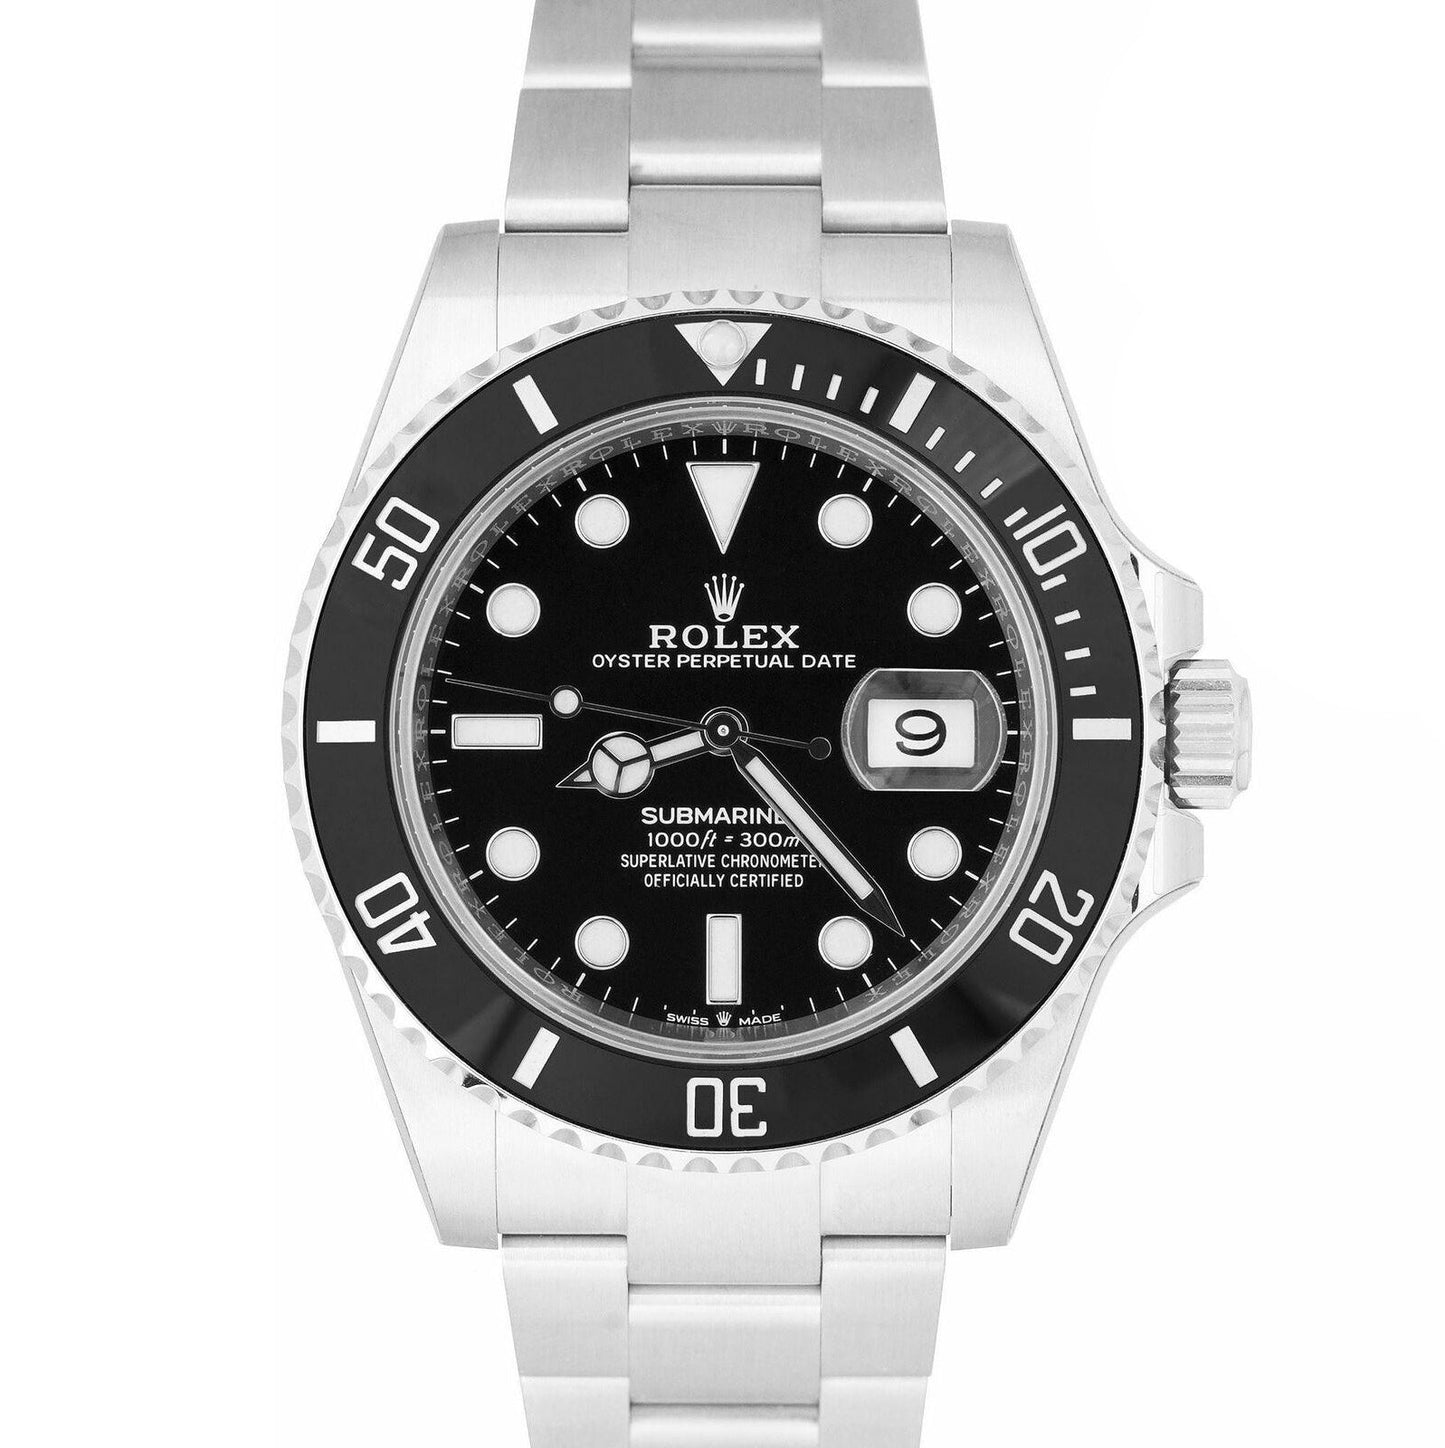 NEW OCT. 2022 Rolex Submariner 41 Date Steel Black Ceramic Watch 126610 LN